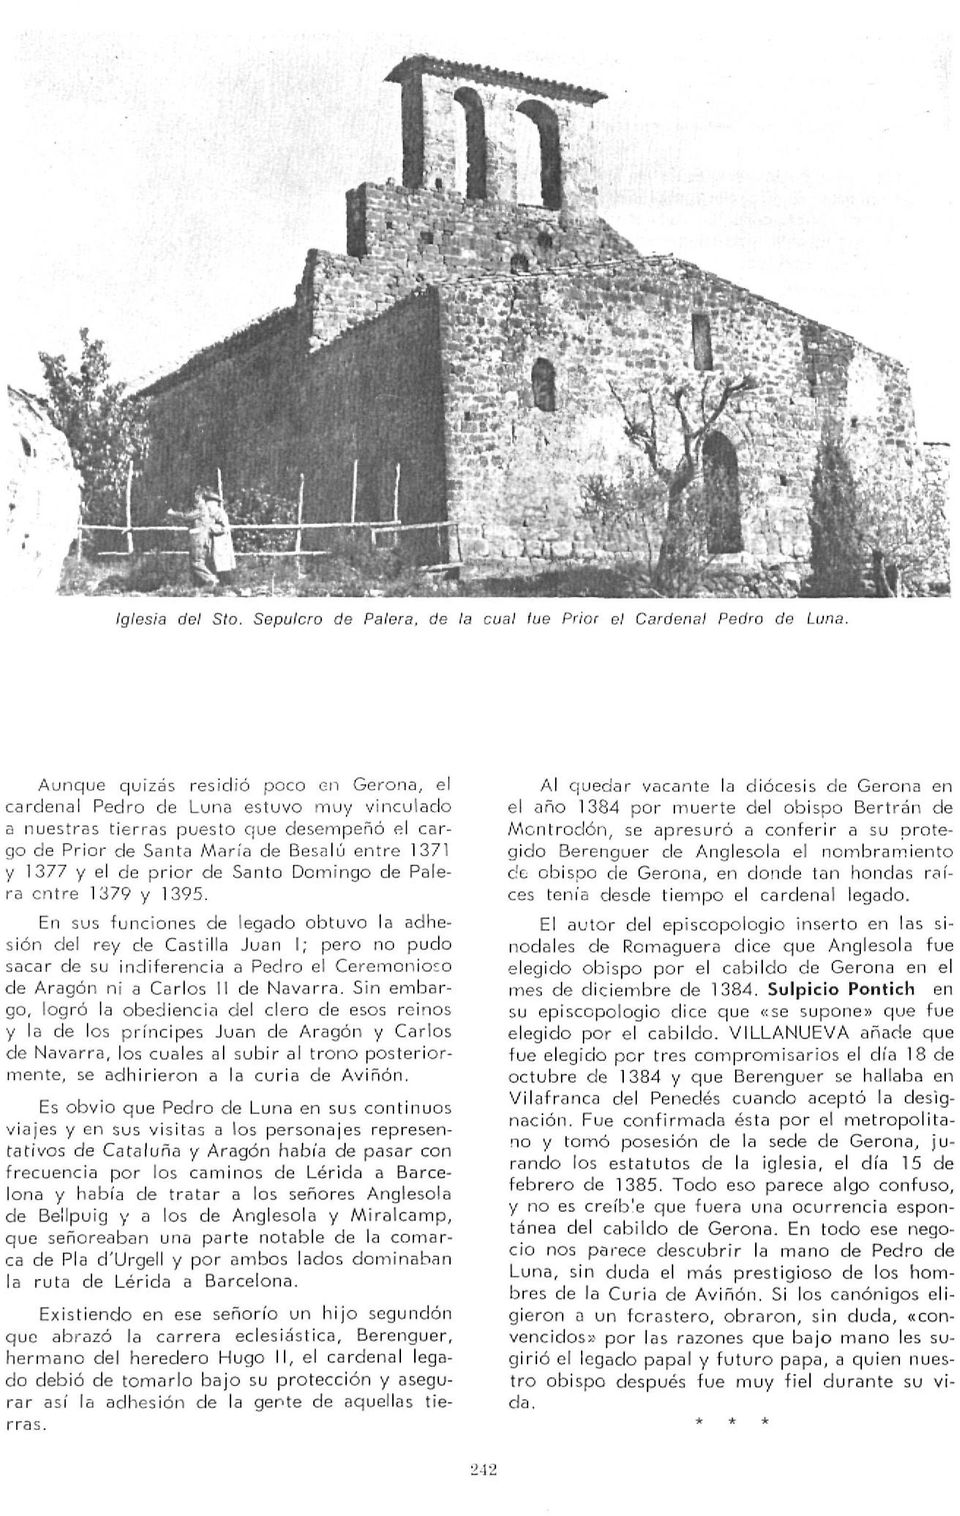 de Santo Domingo de Palera entre 1379 y 1395.